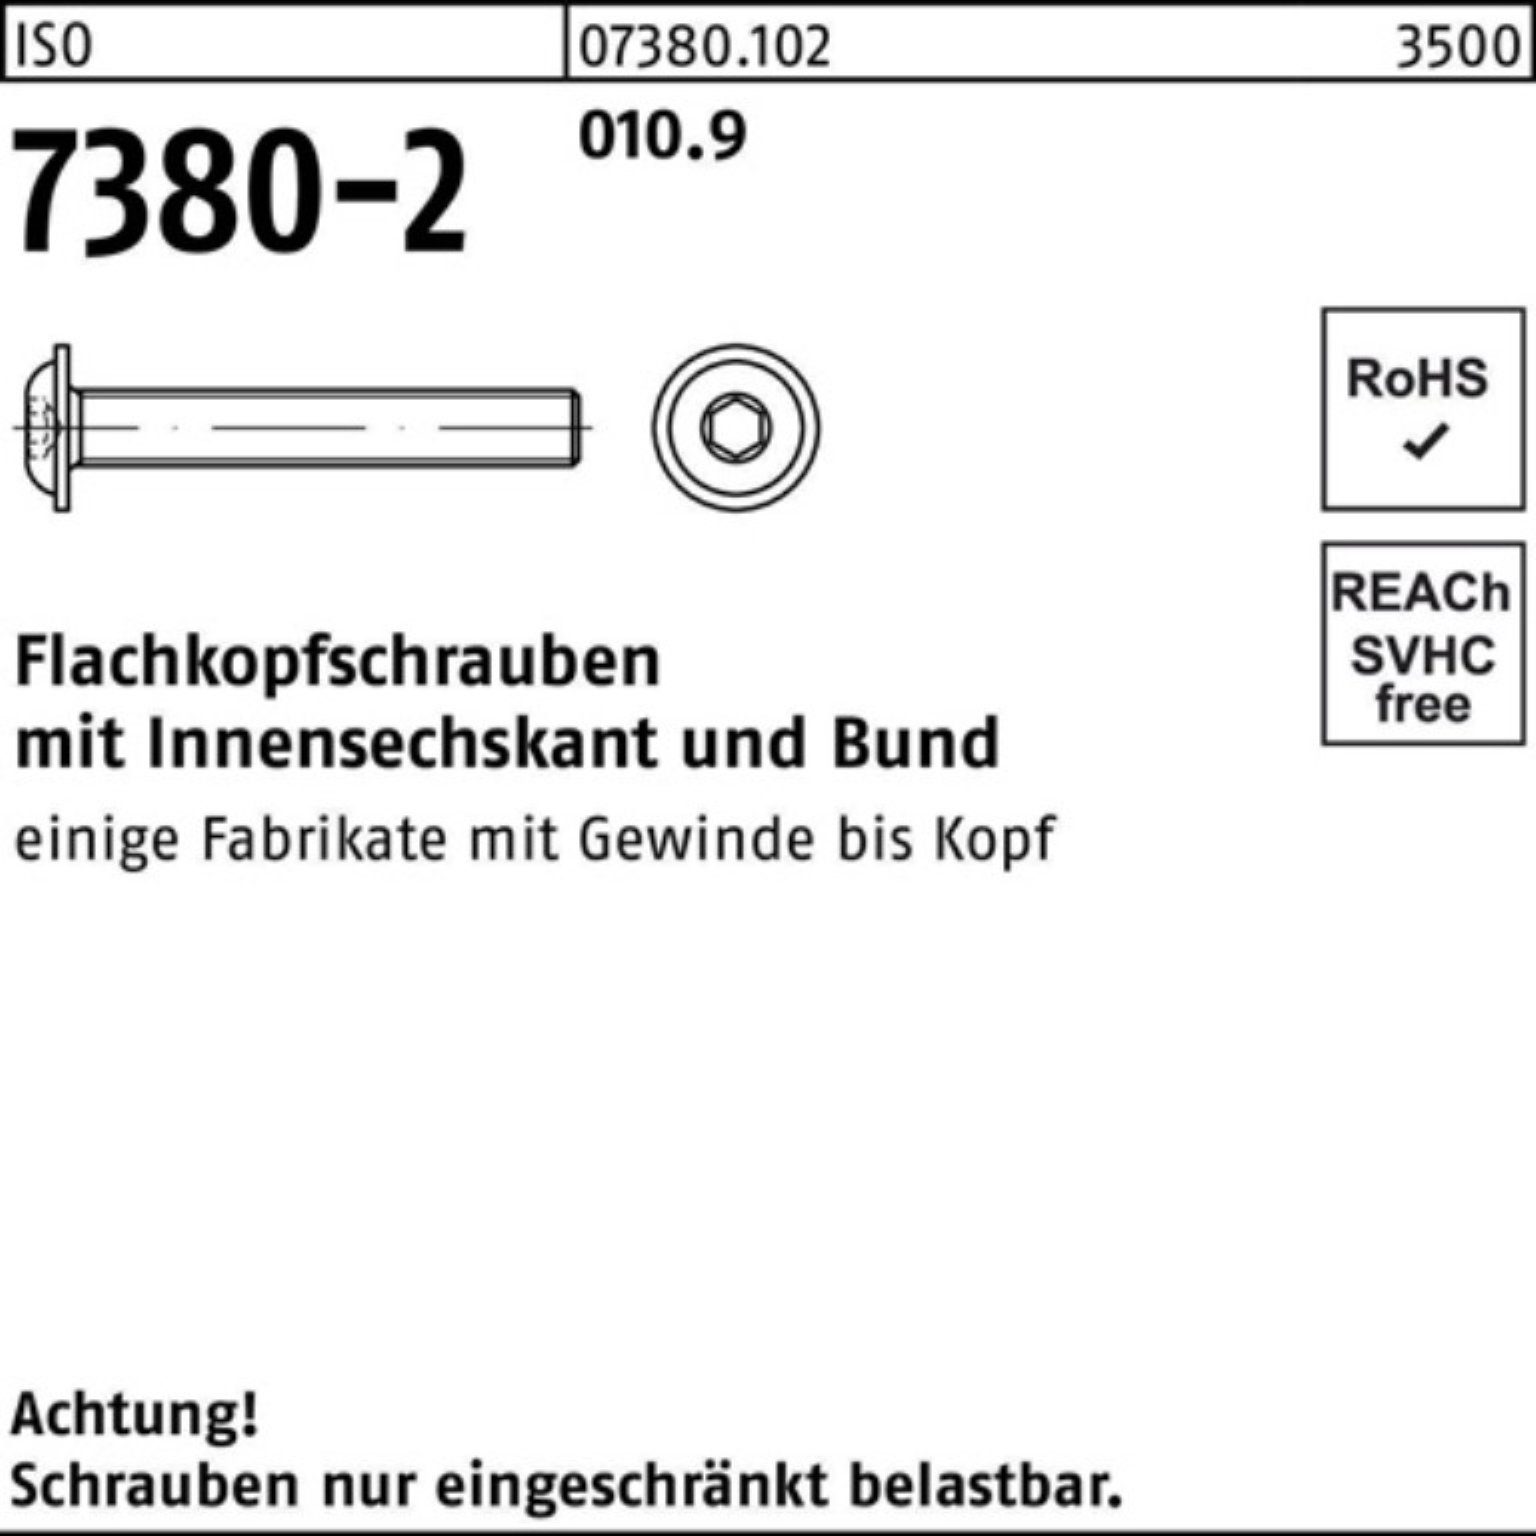 Reyher Schraube 200er Pack Flachkopfschraube 20 7380-2 20 ISO 010.9 Bund/Innen-6kt M8x